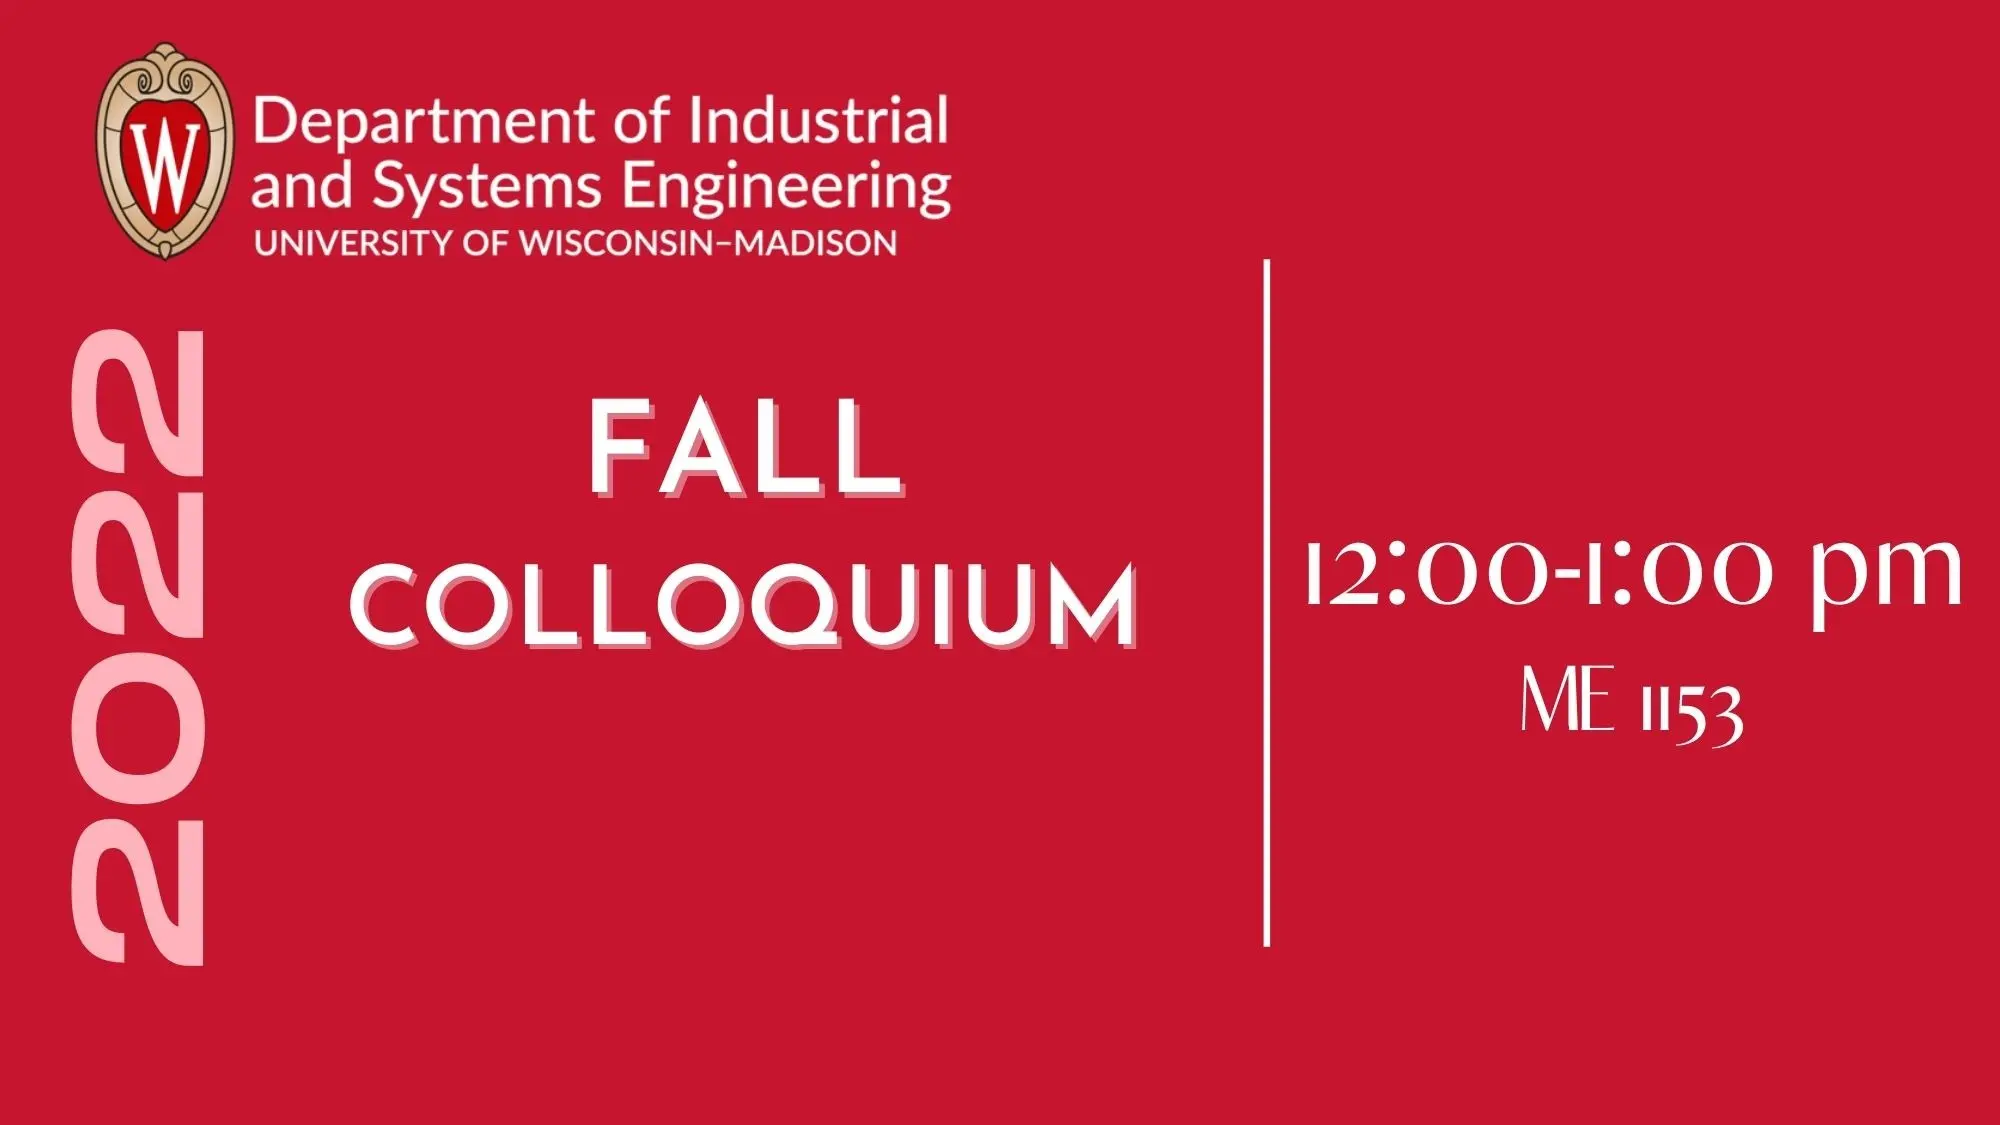 Fall colloquium room 1153 at 12 PM